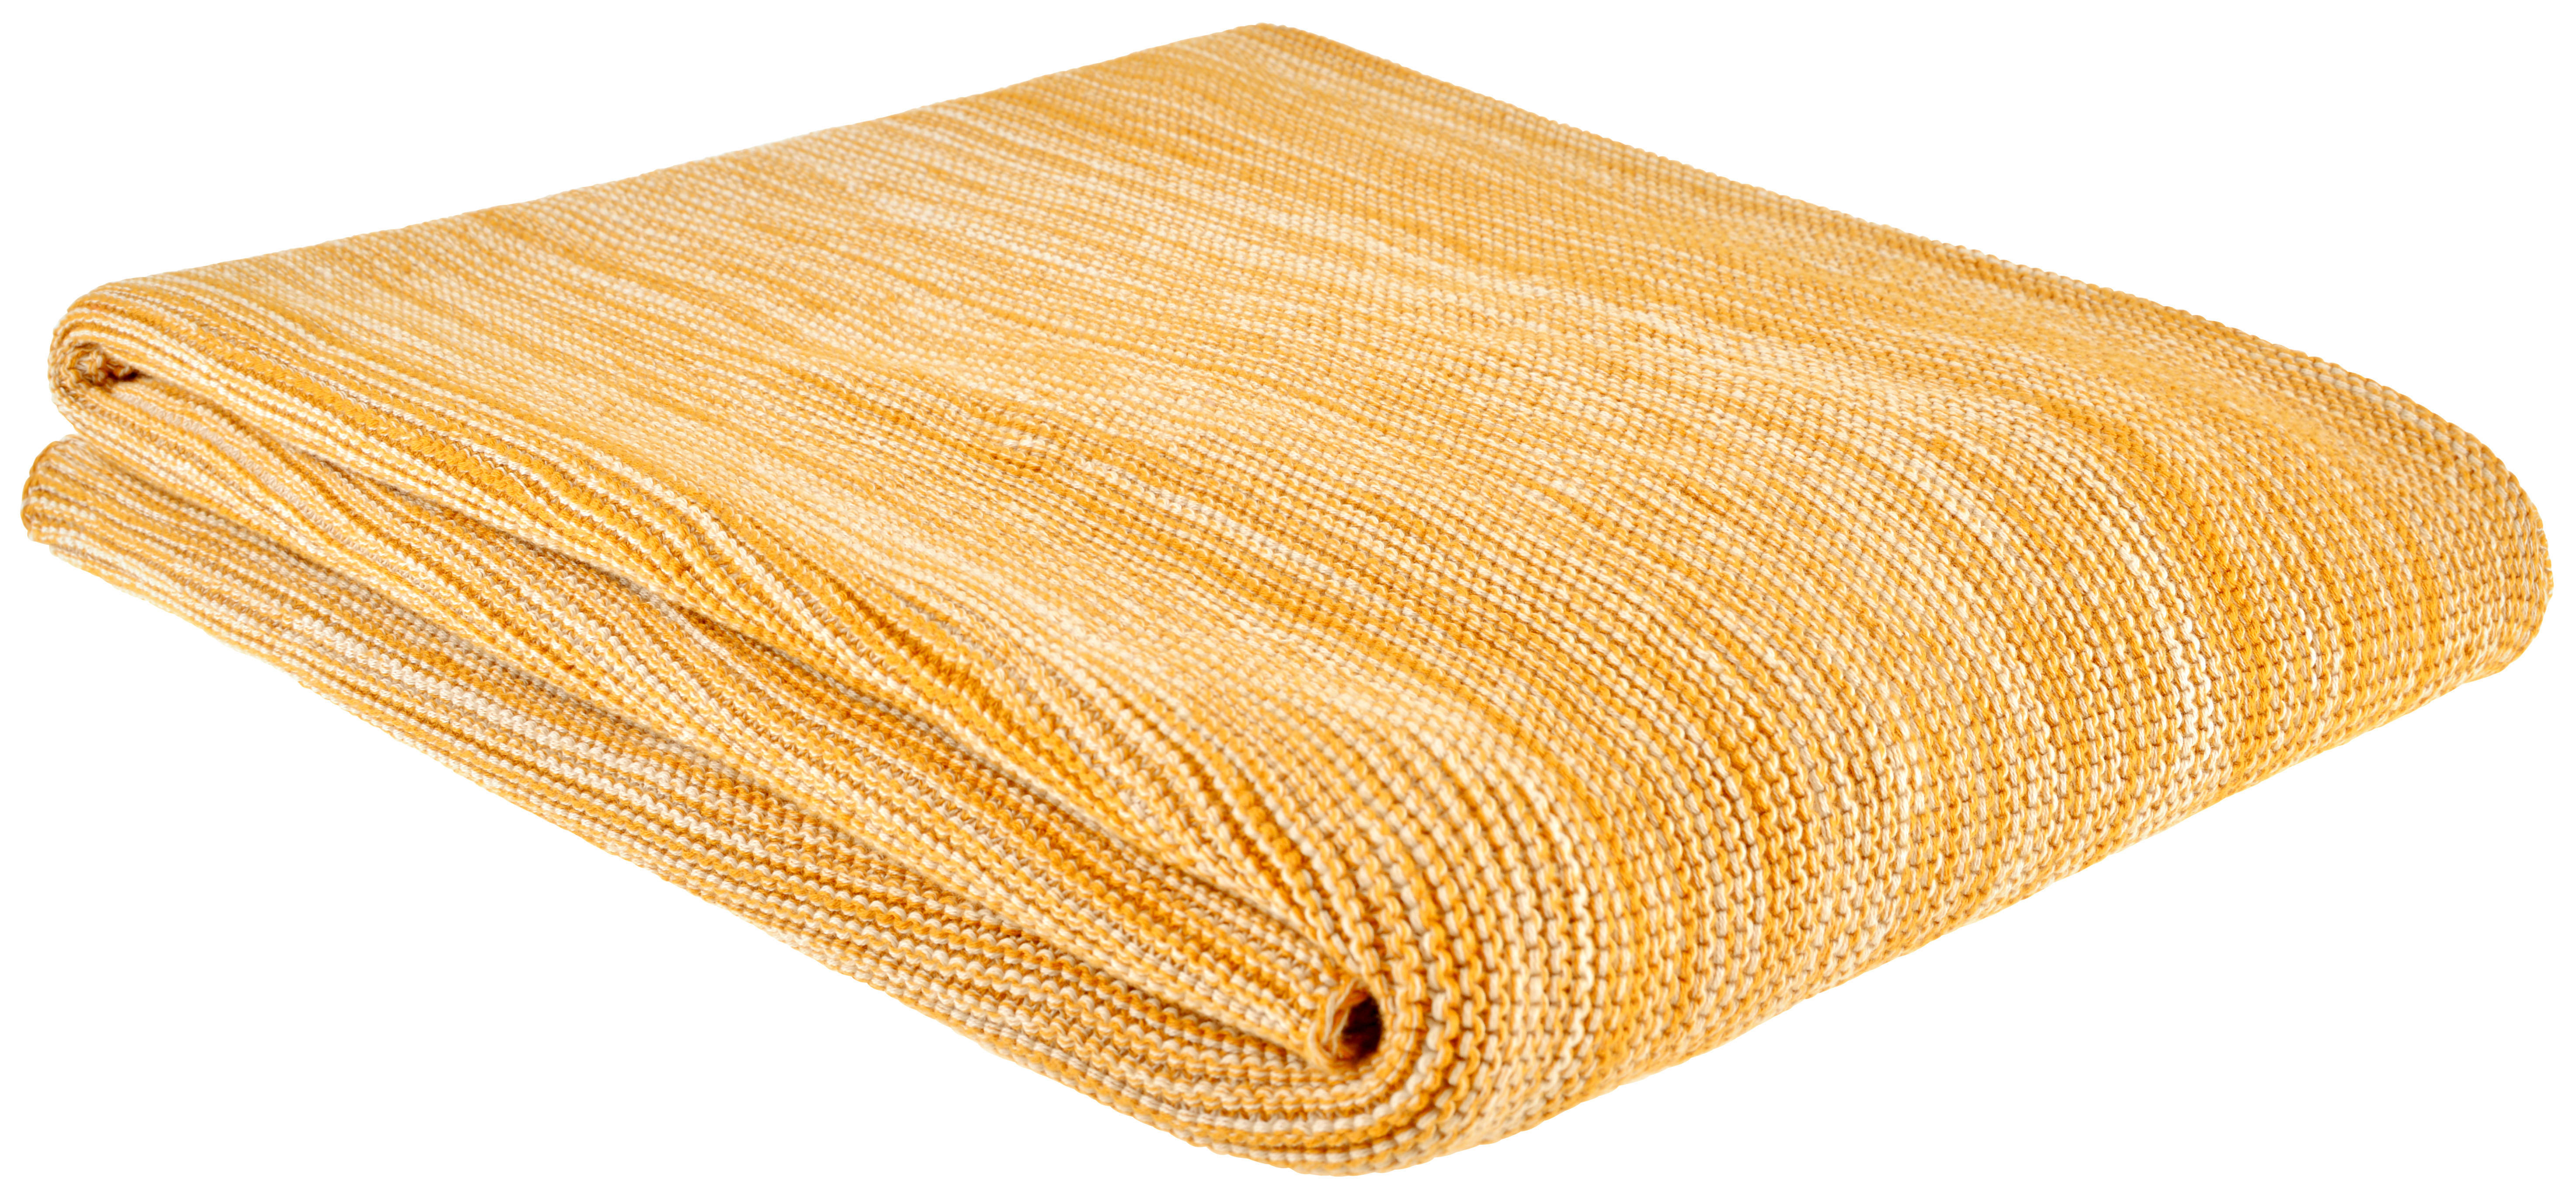 ĆEBE 150/200 cm  - žuta, Osnovno, tekstil (150/200cm) - Bio:Vio